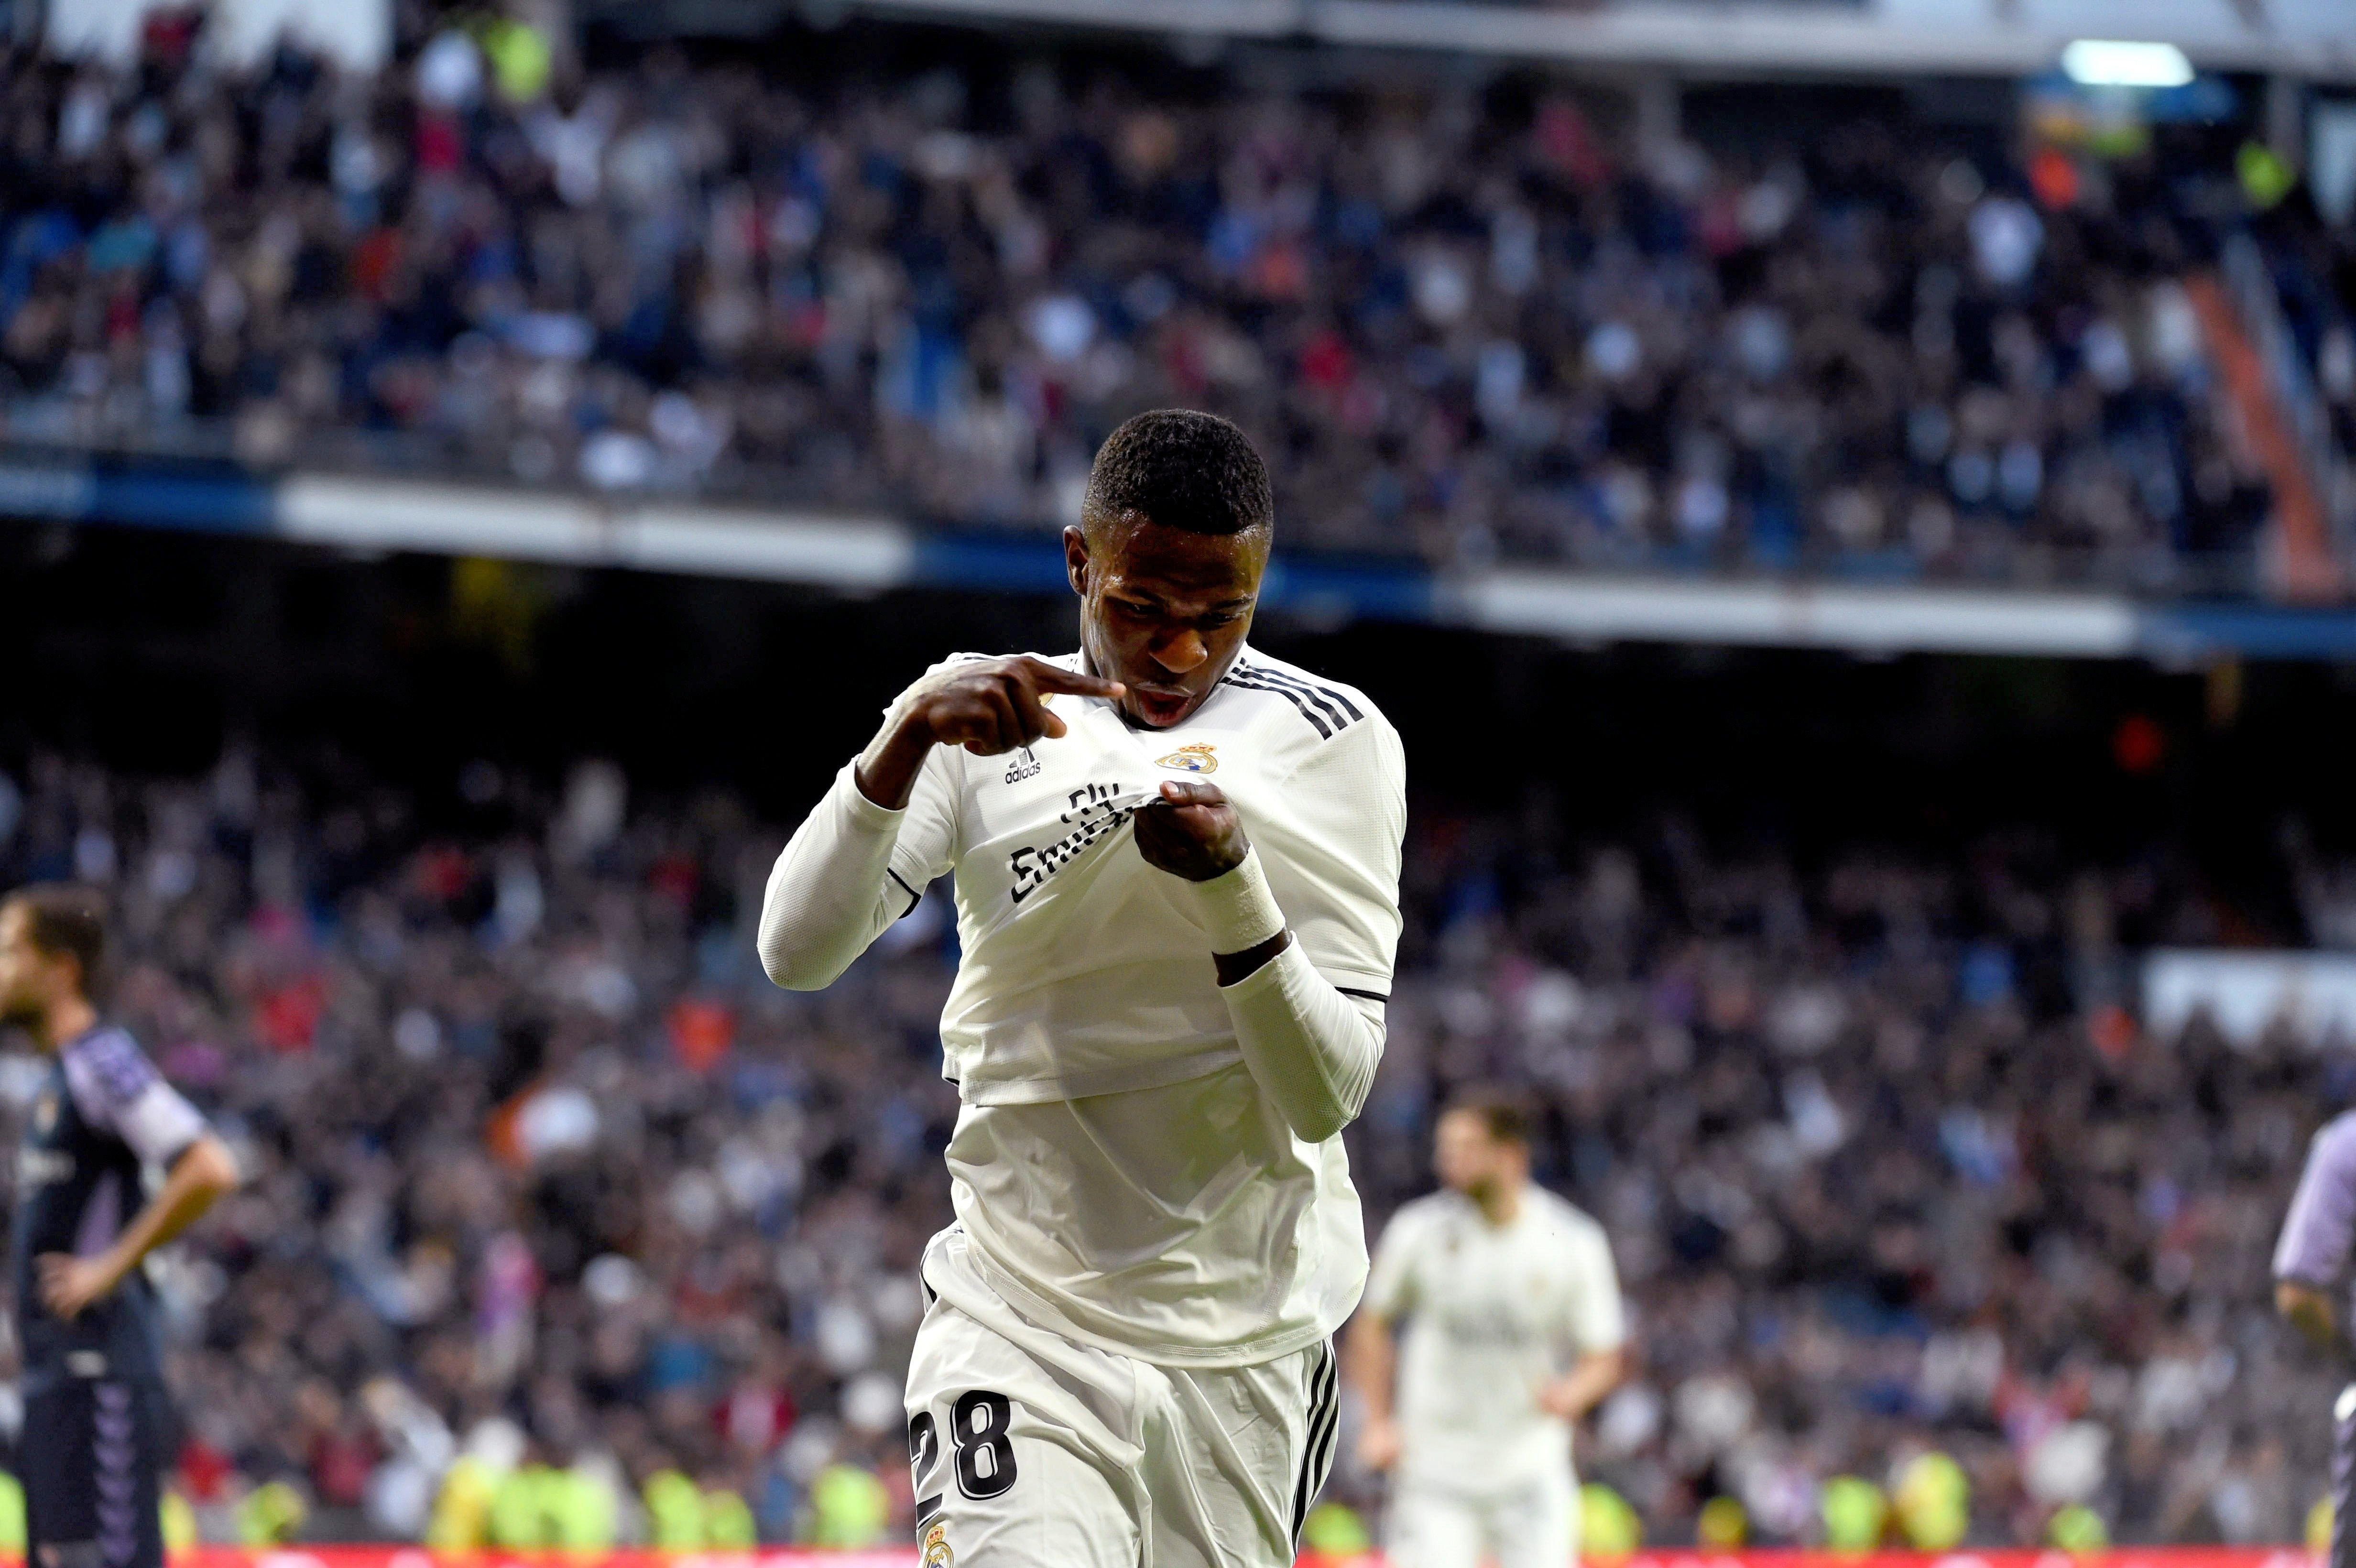 El Madrid se alía con la fortuna para cambiar de dinámica (2-0)